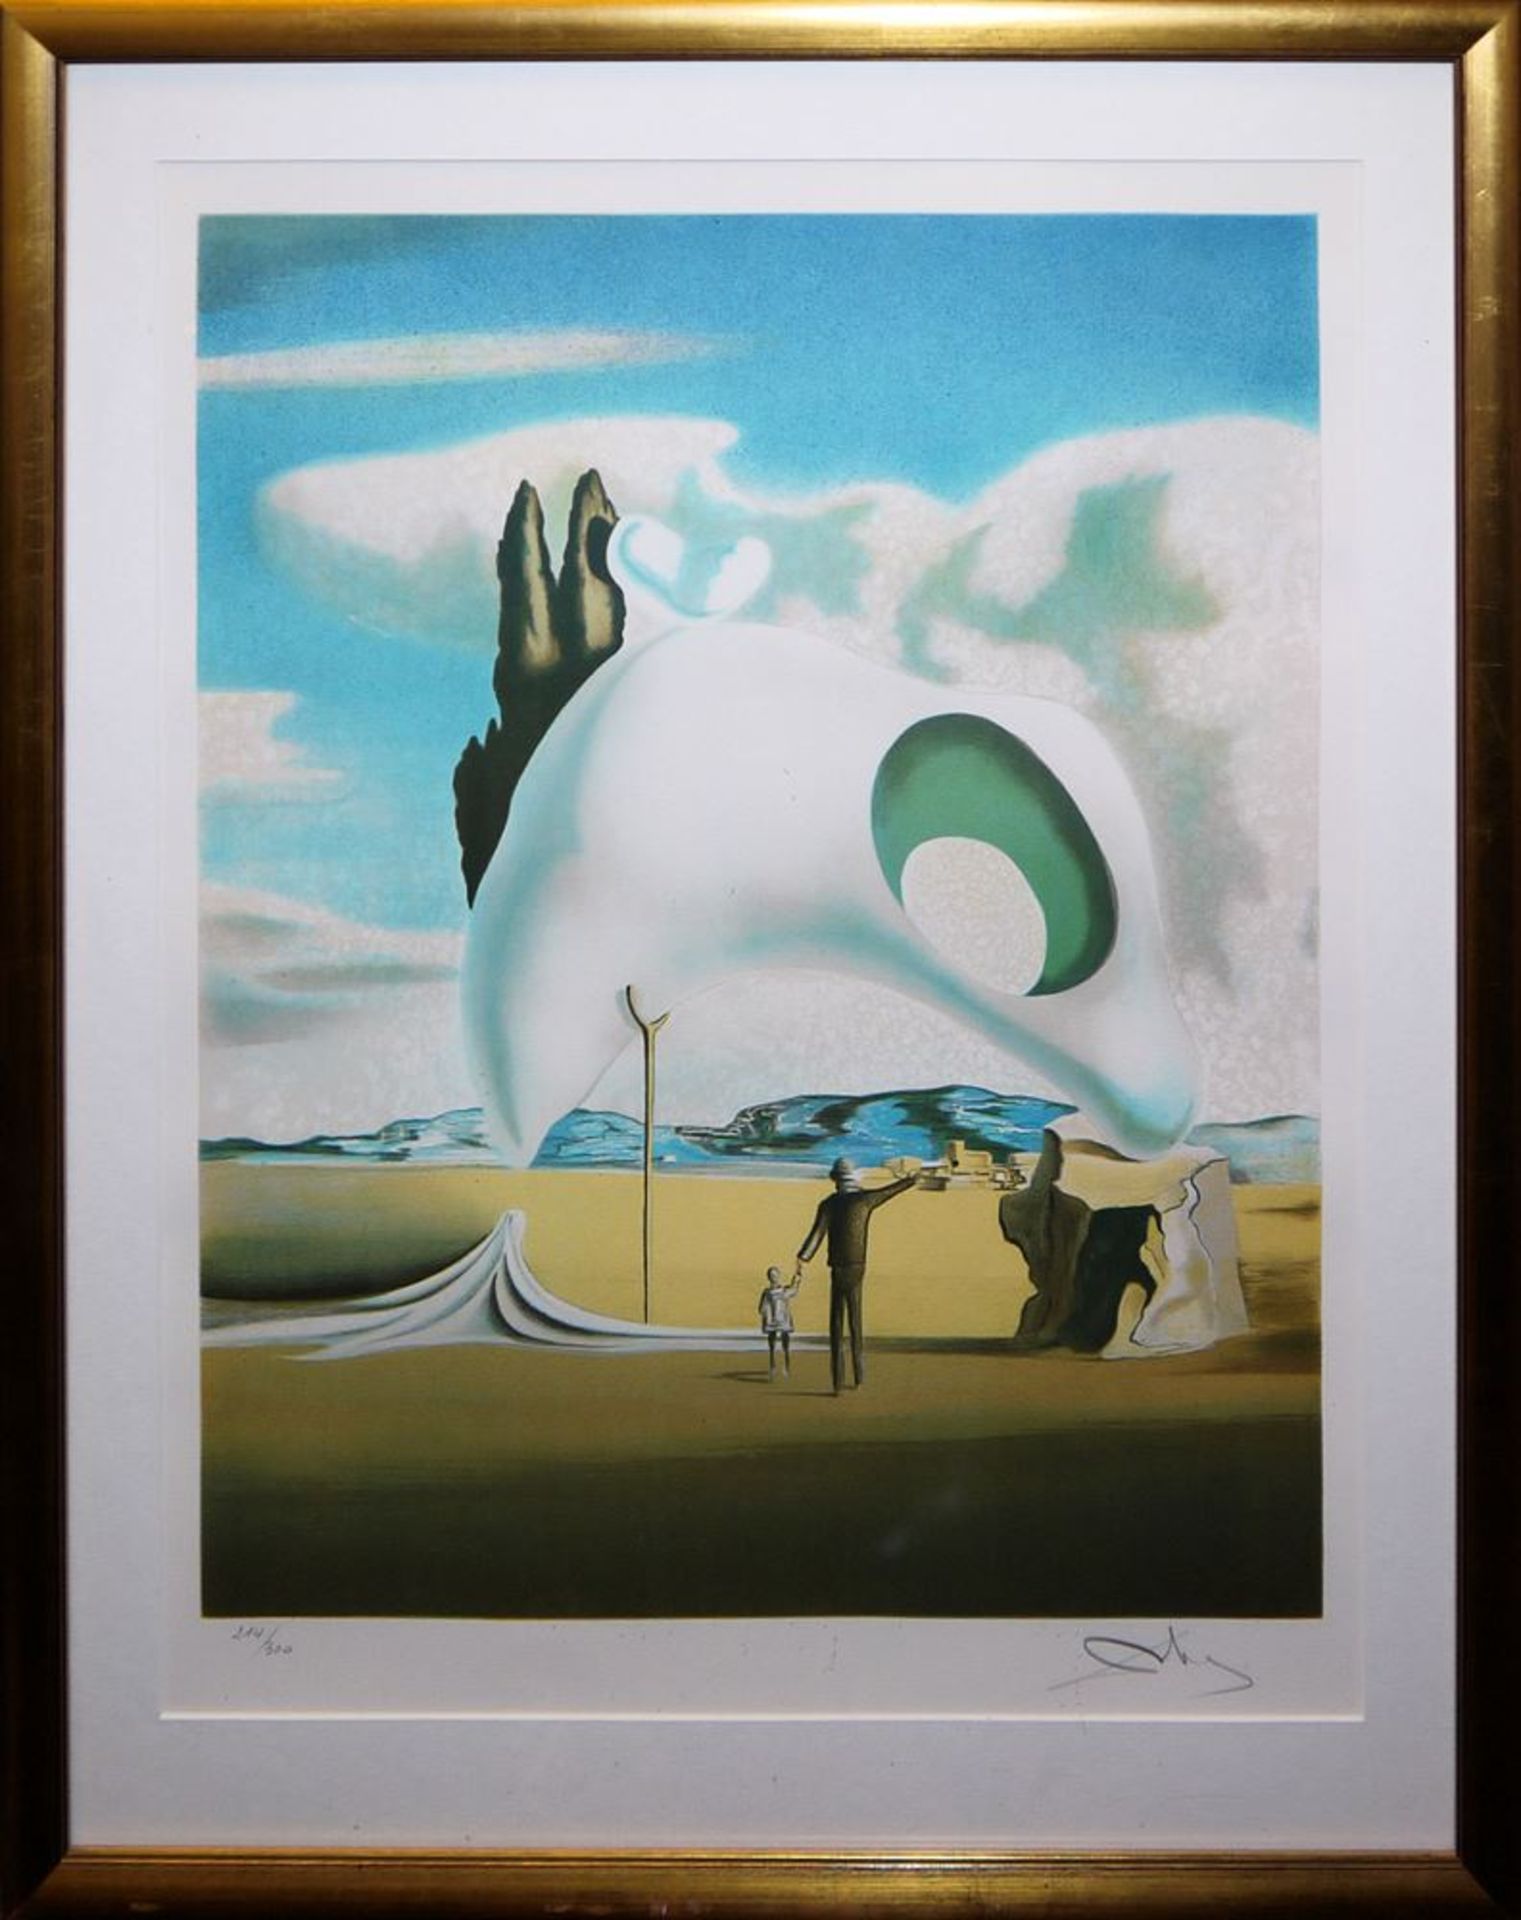 Salvador Dalí, "Atavistische Ruinen", signierte Farblithographie von 1983, im Goldrahmen